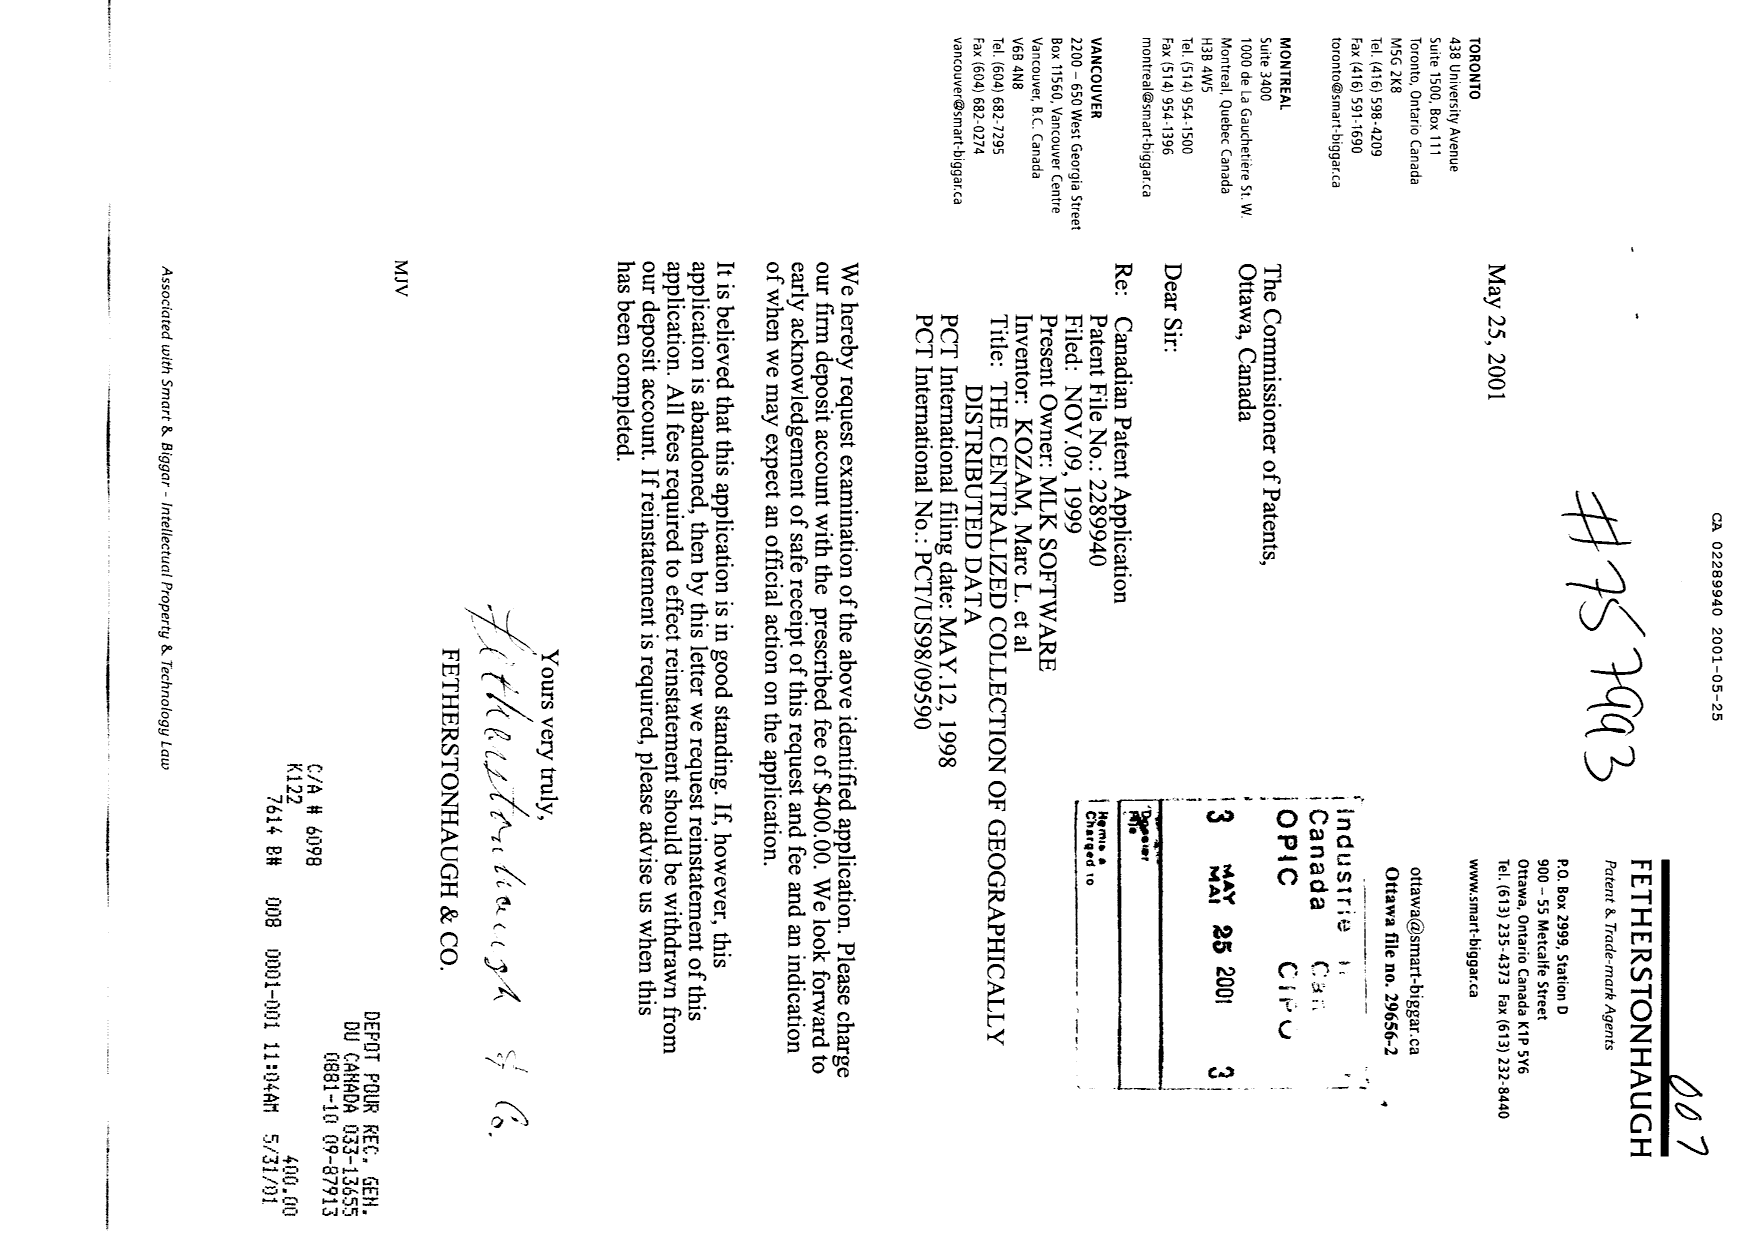 Document de brevet canadien 2289940. Poursuite-Amendment 20010525. Image 1 de 1